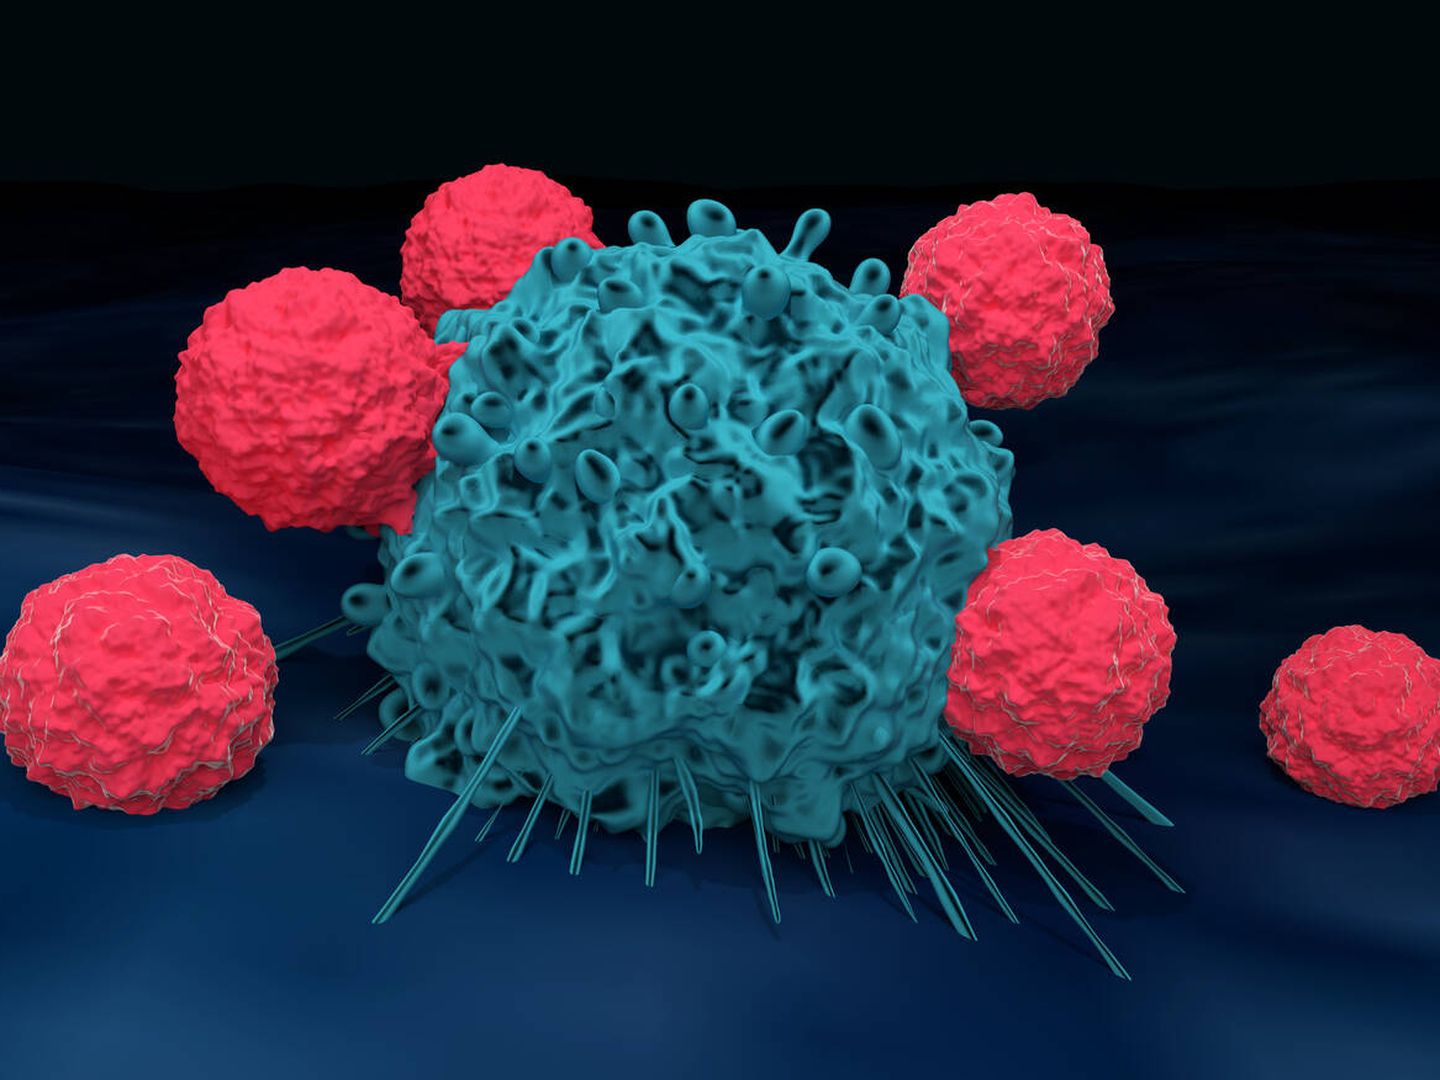 Células T atacando una célula cancerosa. (iStock)